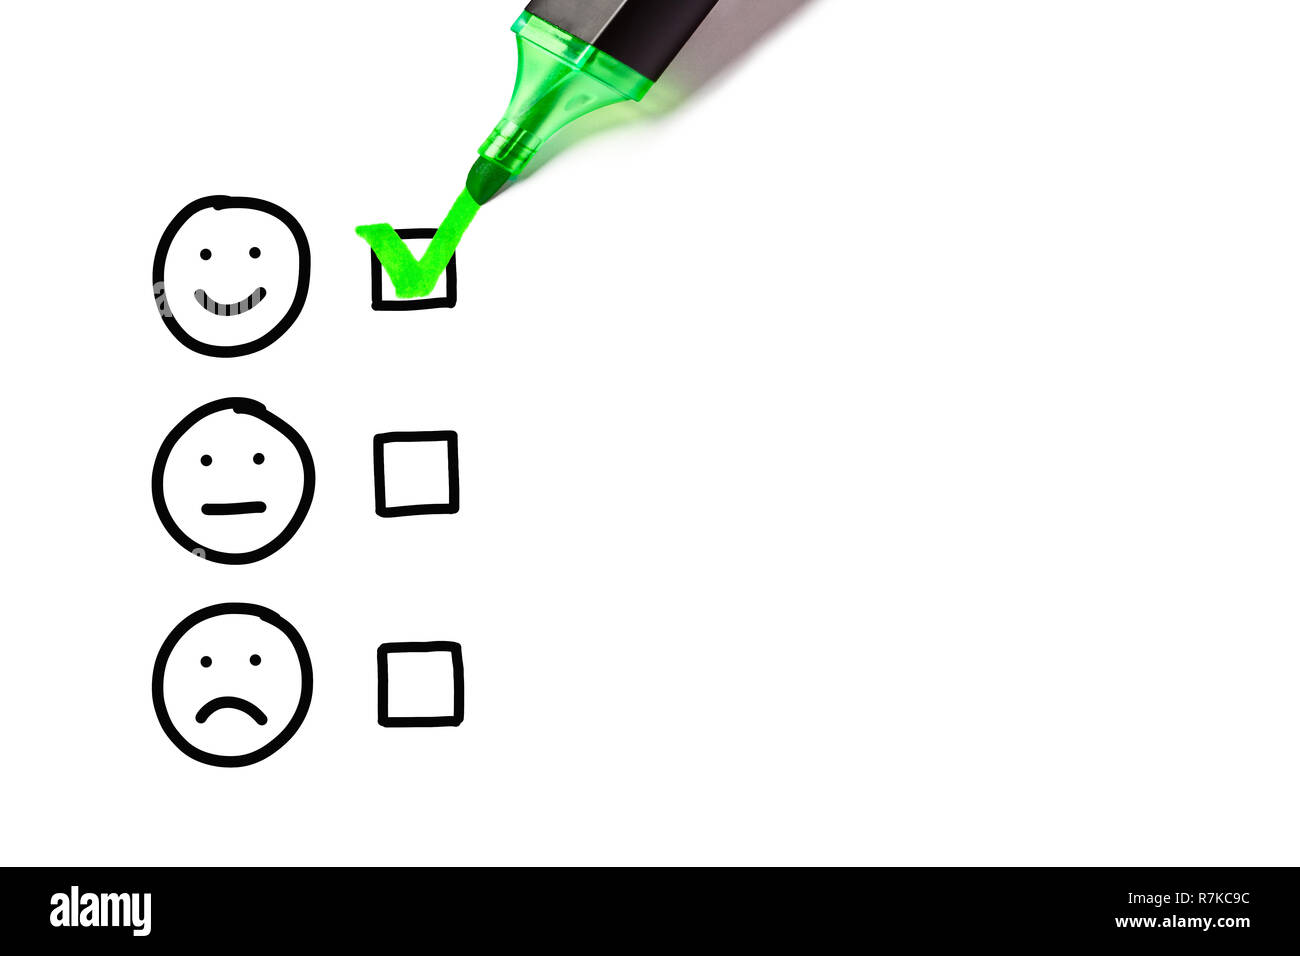 Marqueur vert mettre coche sur l'excellente liste de sondage vierge à côté de dessiné un visage heureux. Concept de satisfaction client. Banque D'Images